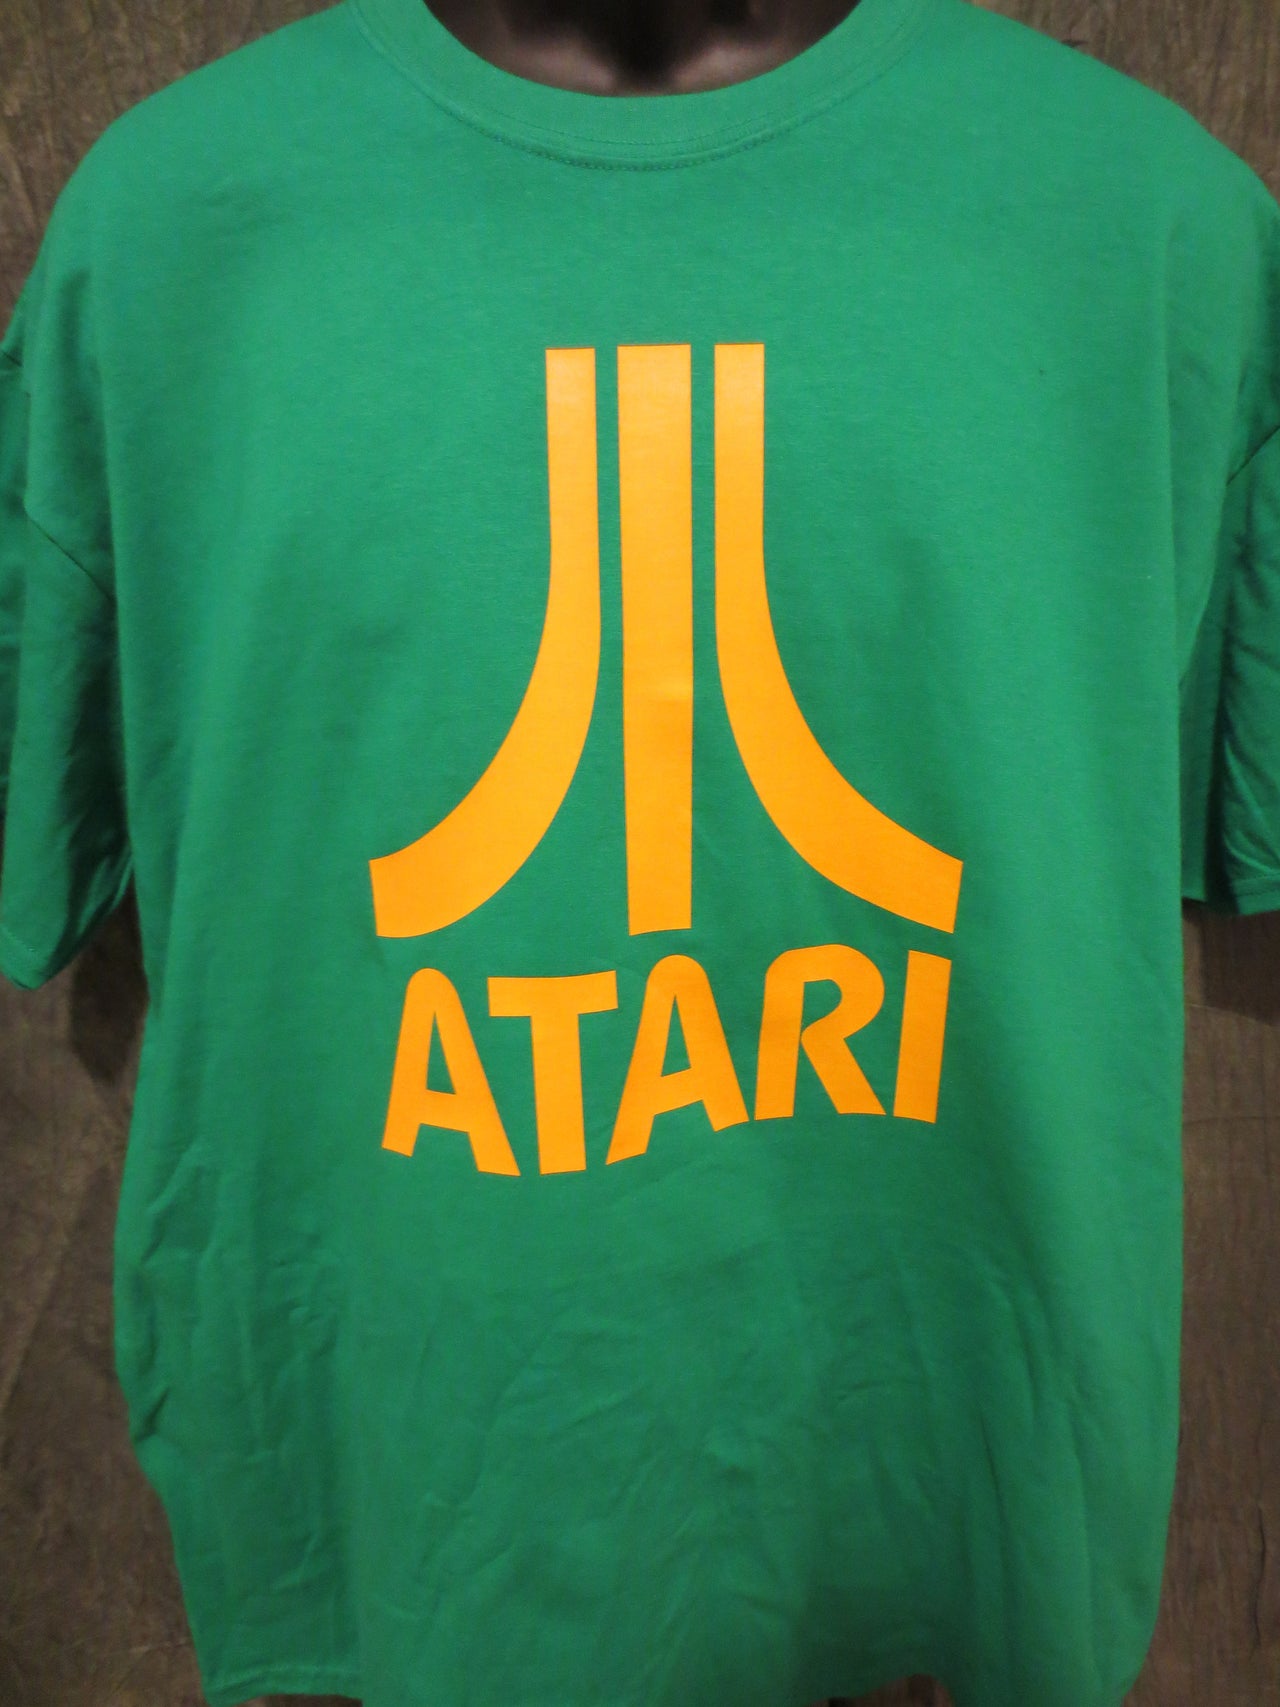 Atari Logo Tshirt: Green With Yellow Print - TshirtNow.net - 5